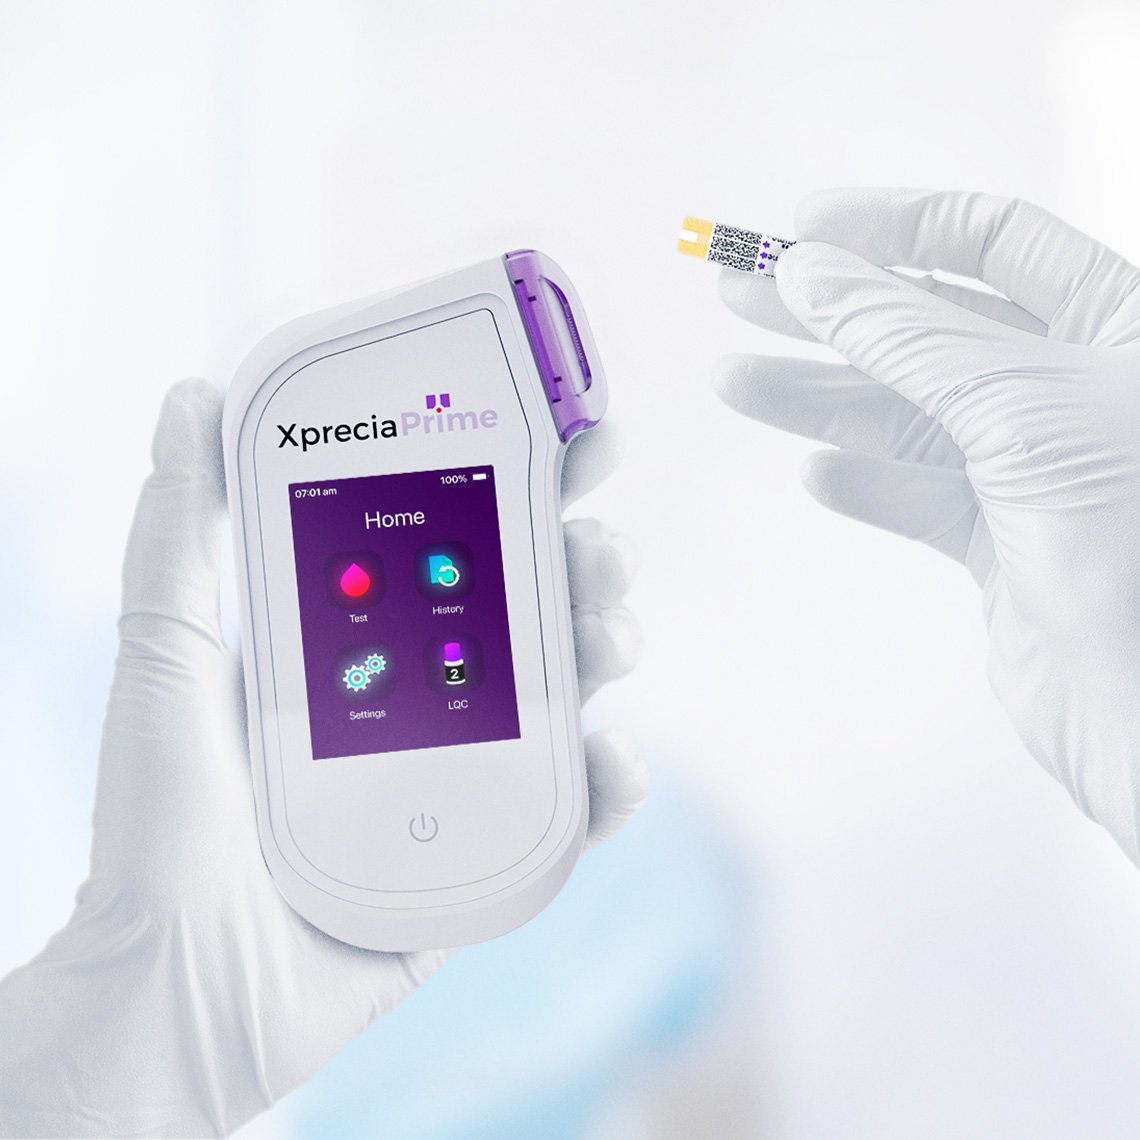 Universal Biosensors Xprecia Prime POC Testing Device | Medical Scientific Product Development Showcase